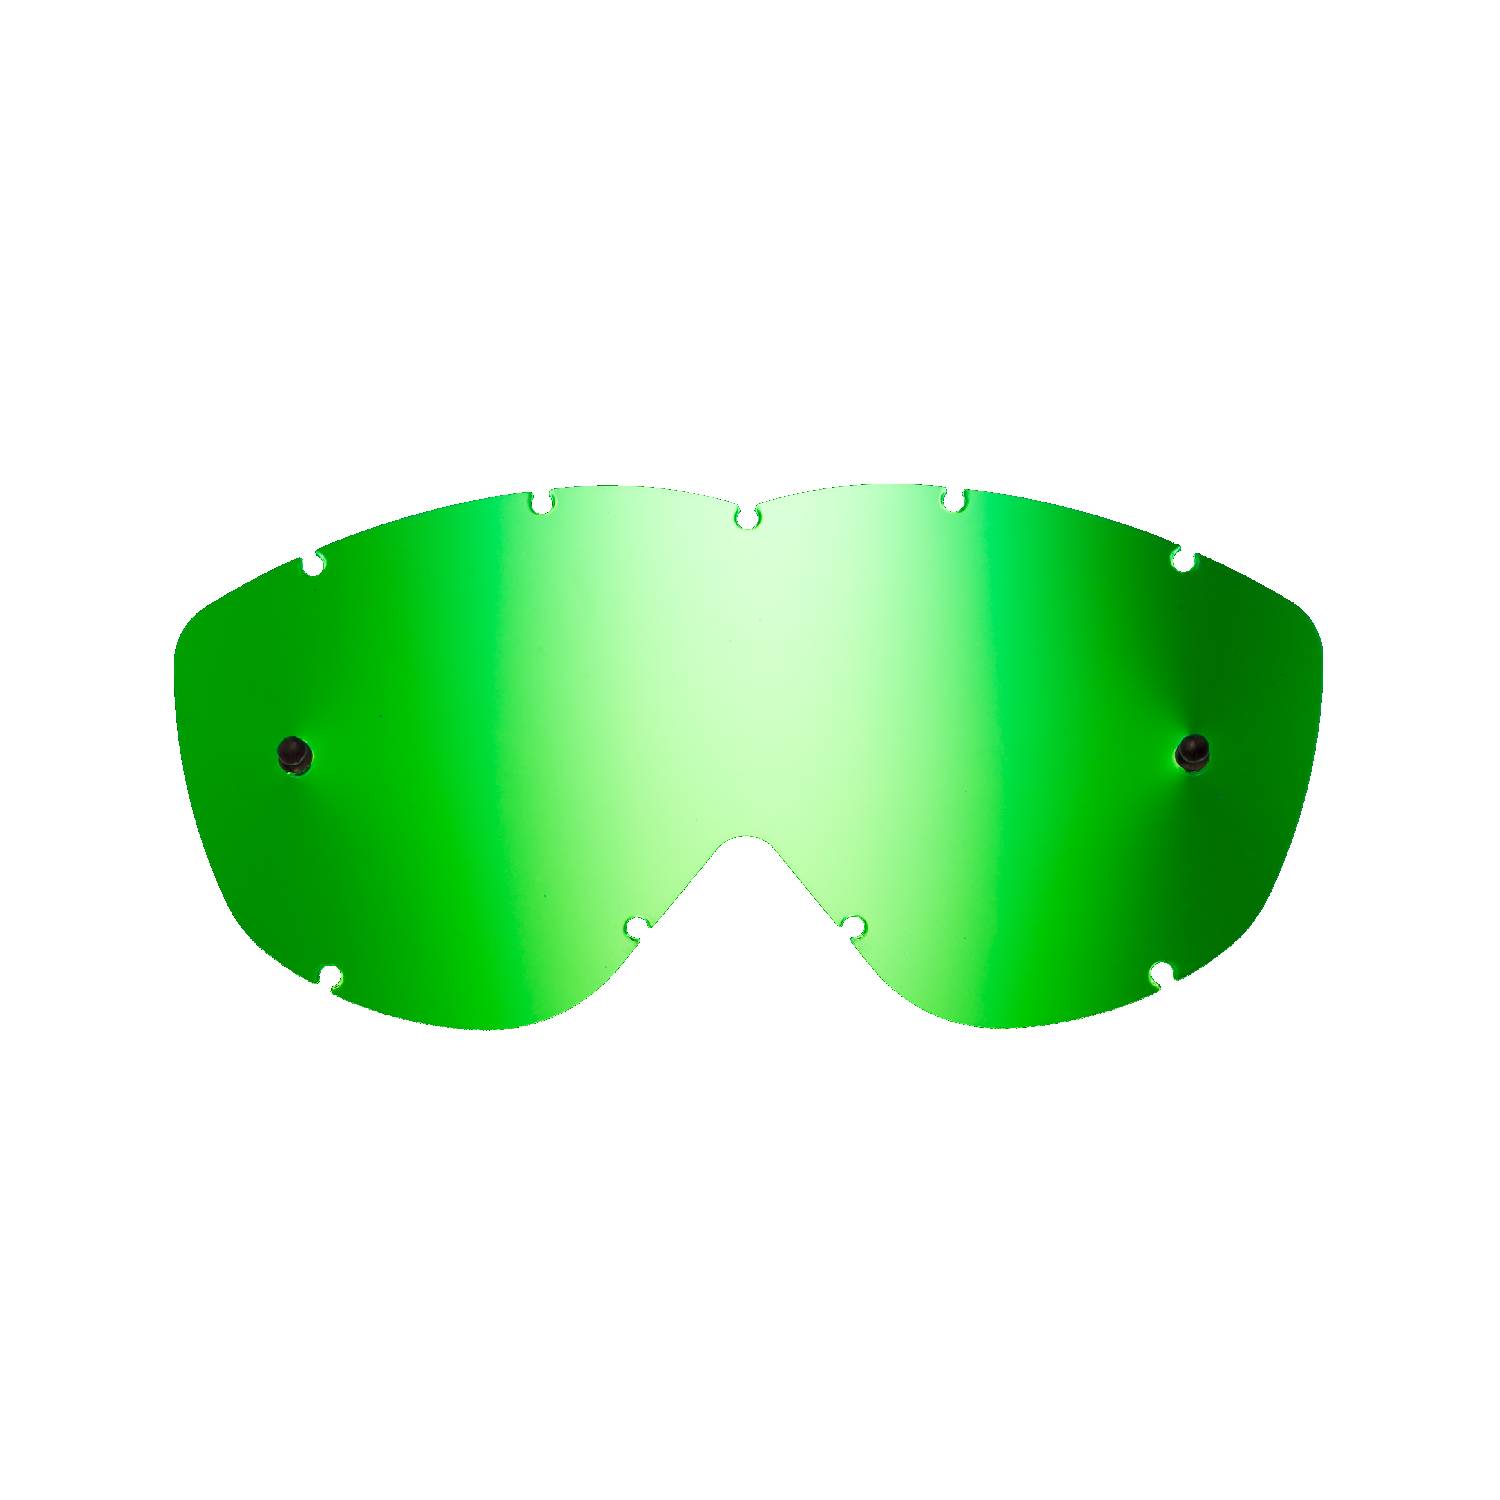 Lente di ricambio verde specchiato compatibile per occhiale/maschera Spy Alloy / Targa